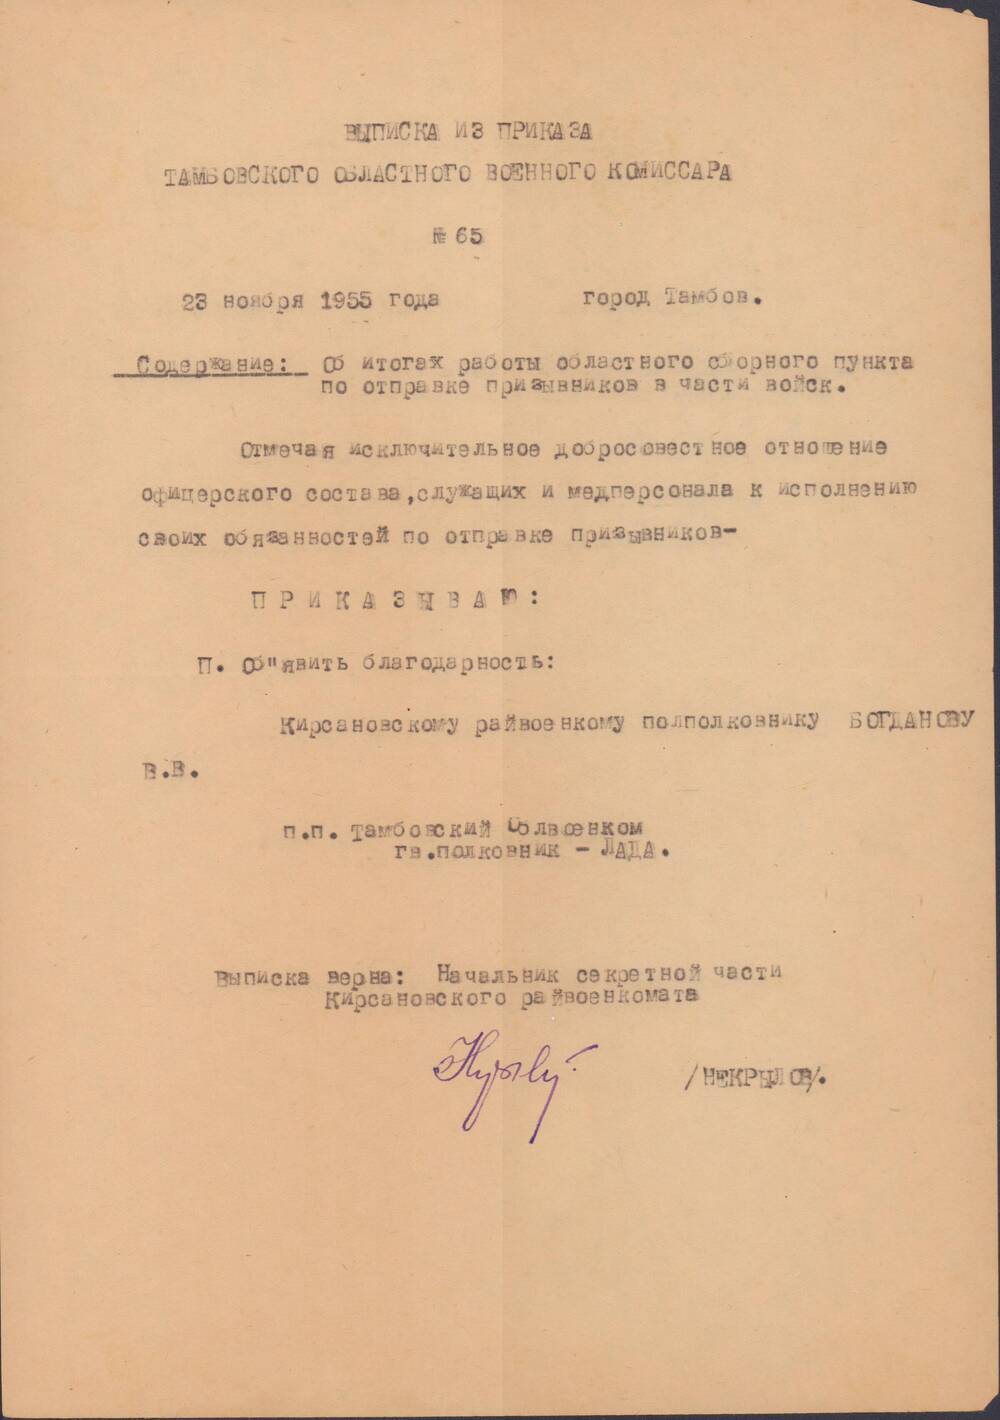 Выписка из приказа Тамбовского областного военного комиссара №65, Богданова В.В.